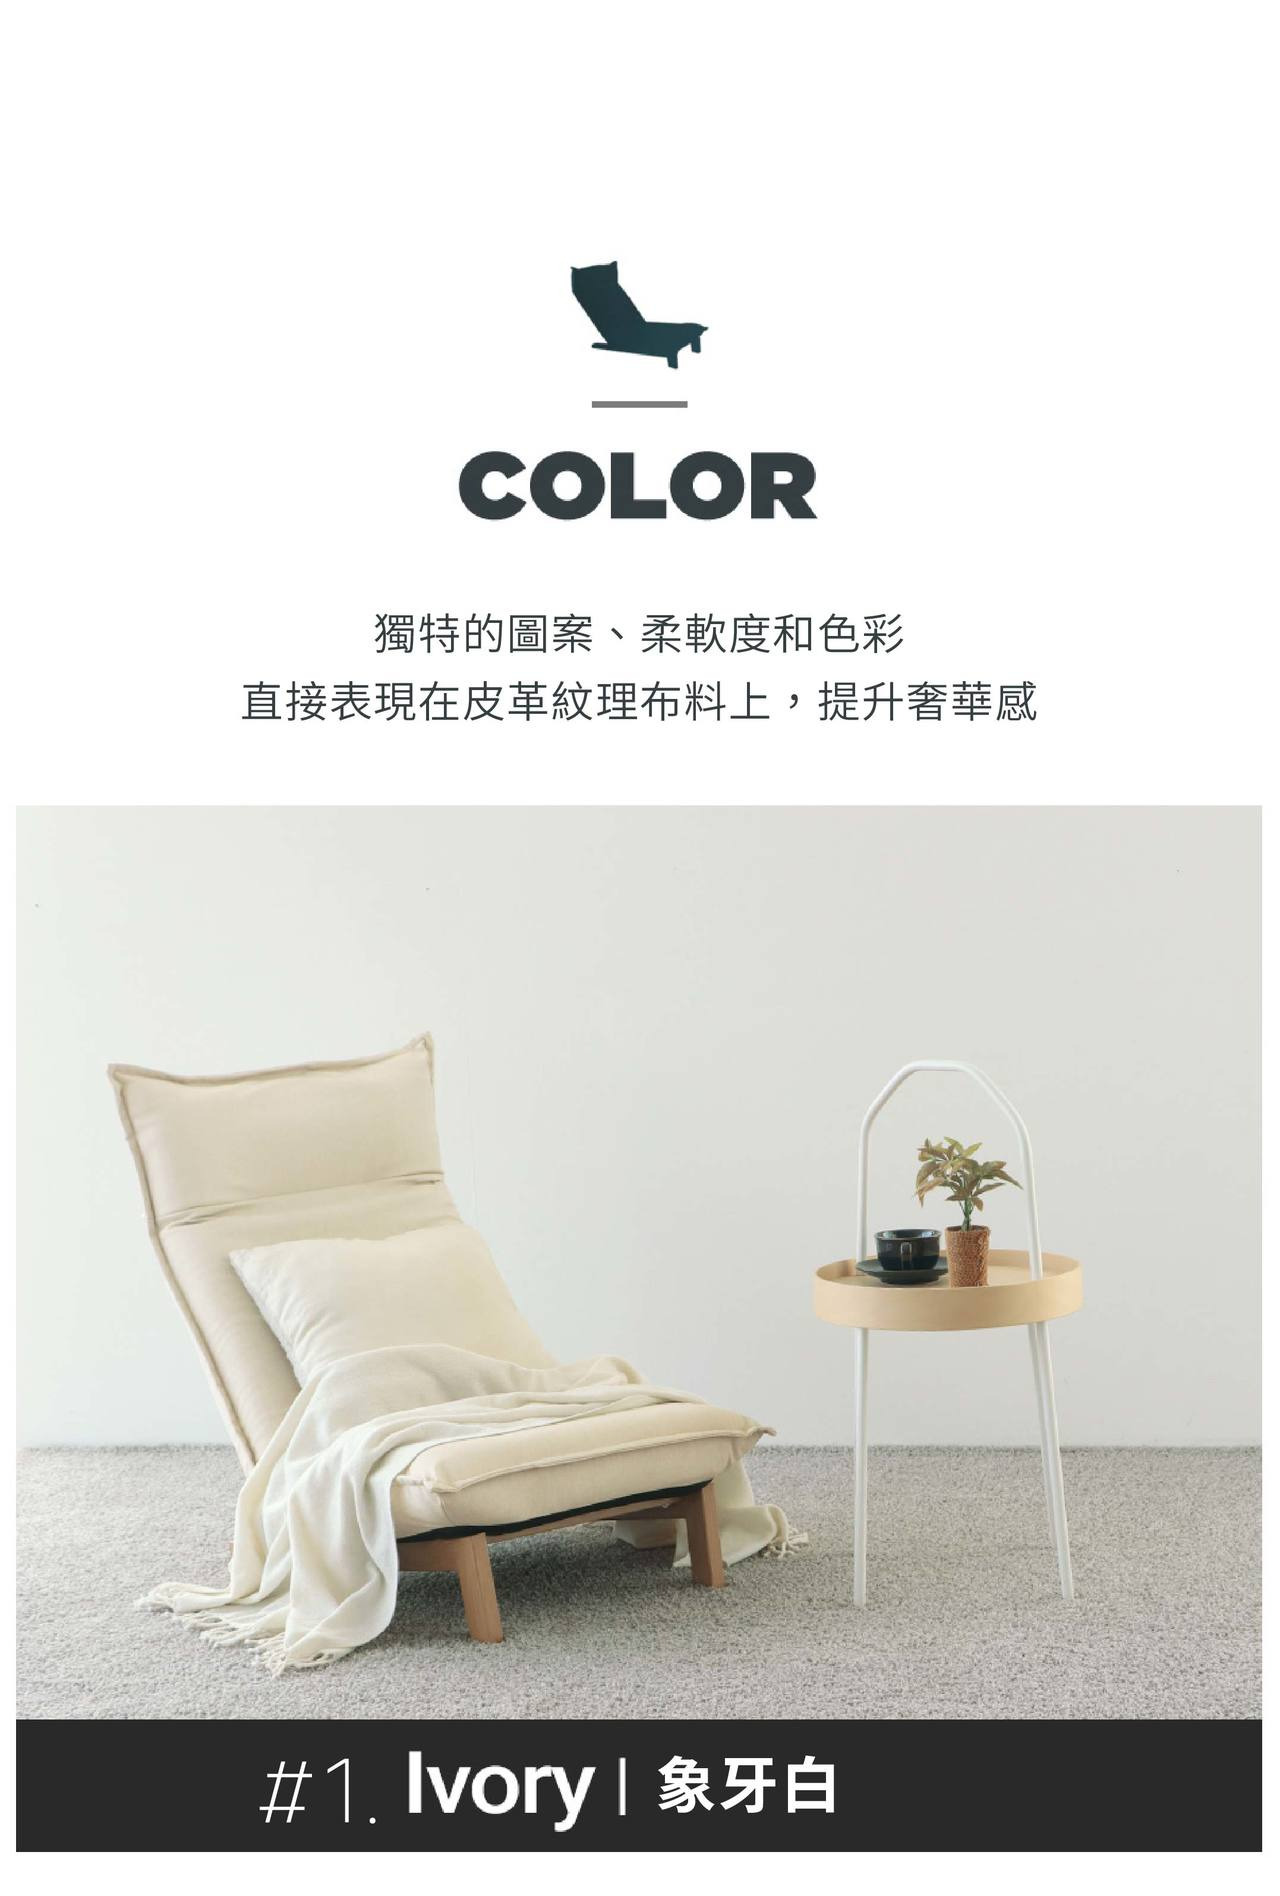 沙發顏色是簡約質感的象牙白，擺放於室內無違和